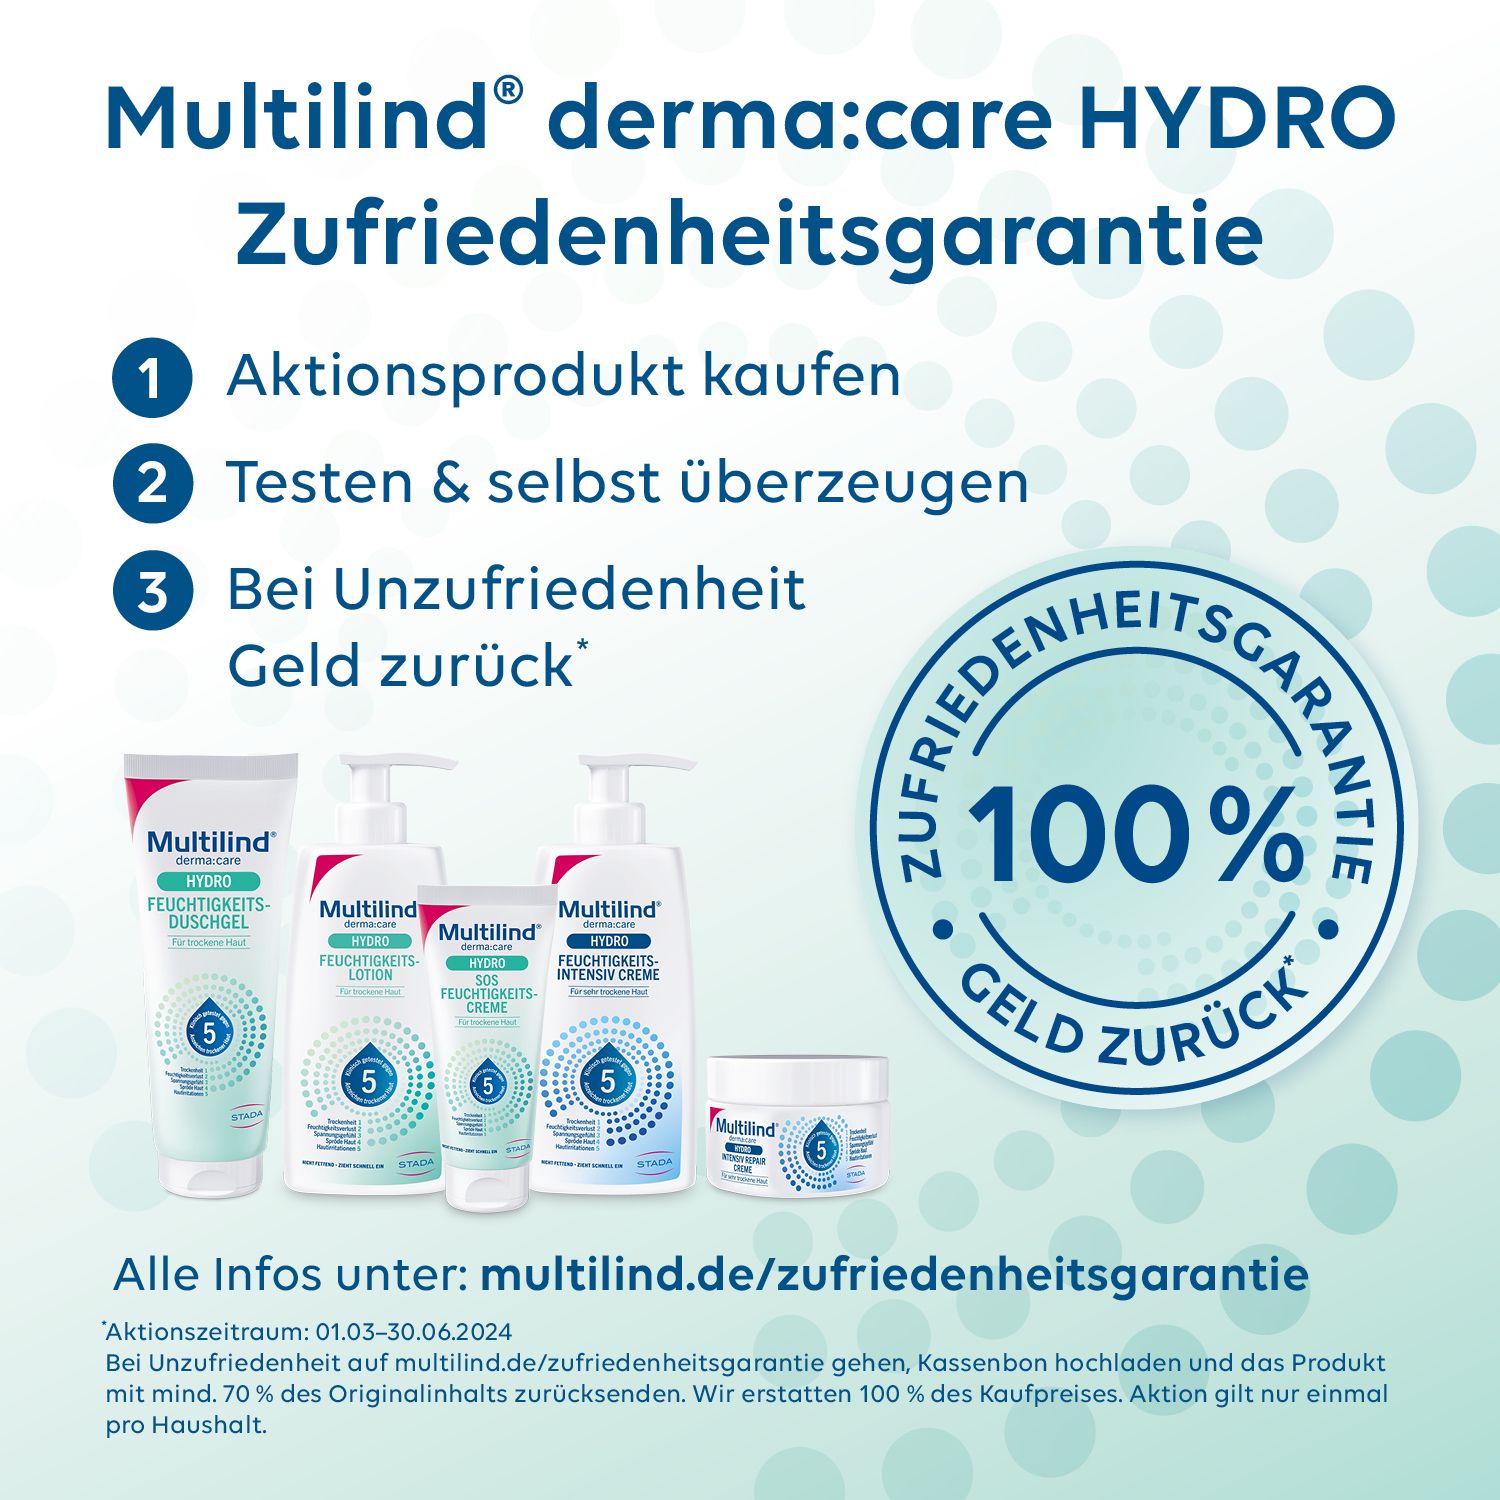 Multilind® derma:care HYDRO SOS Feuchtigkeitscreme: Intensive Feuchtigkeit. Für trockene, raue Hautstellen. Pflegt mit Ceramide NP, Panthenol, Glyzerin, Rizinusöl, Beerenwachs